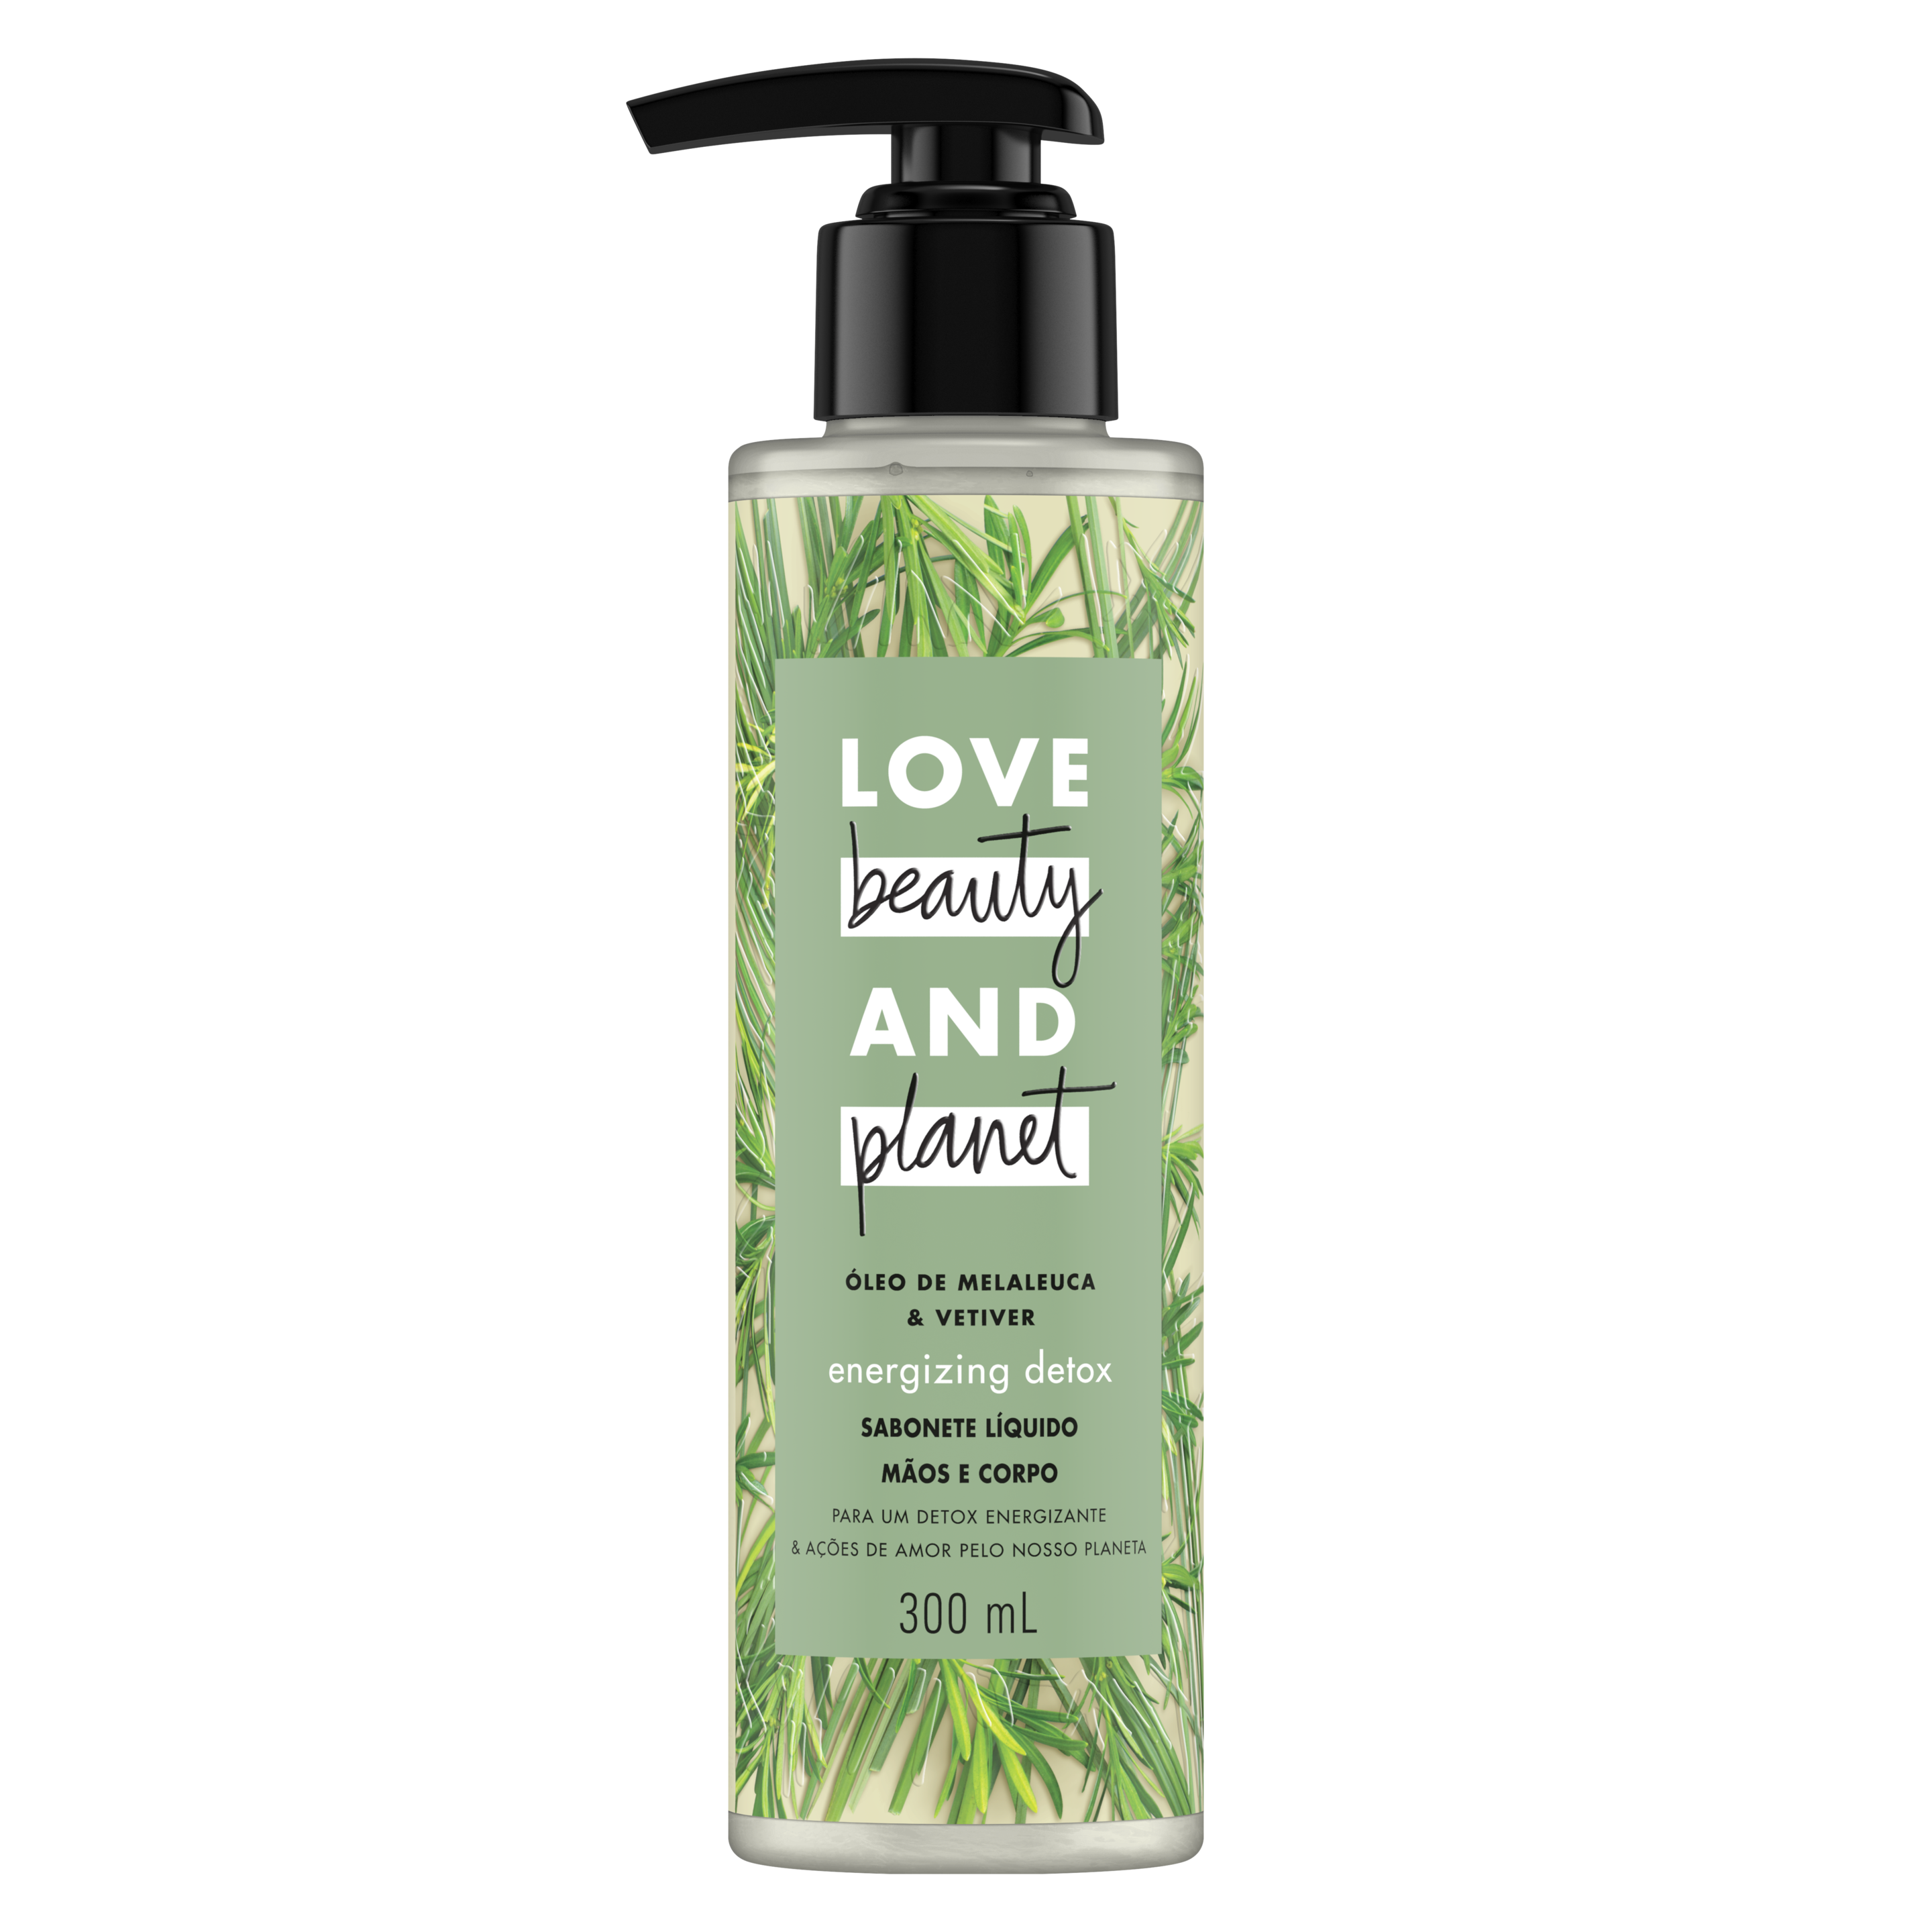 Frente da embalagem do sabonete líquido para o corpo e mãos Love Beauty and Planet óleo de melaleuca & vetiver 300 ml Text